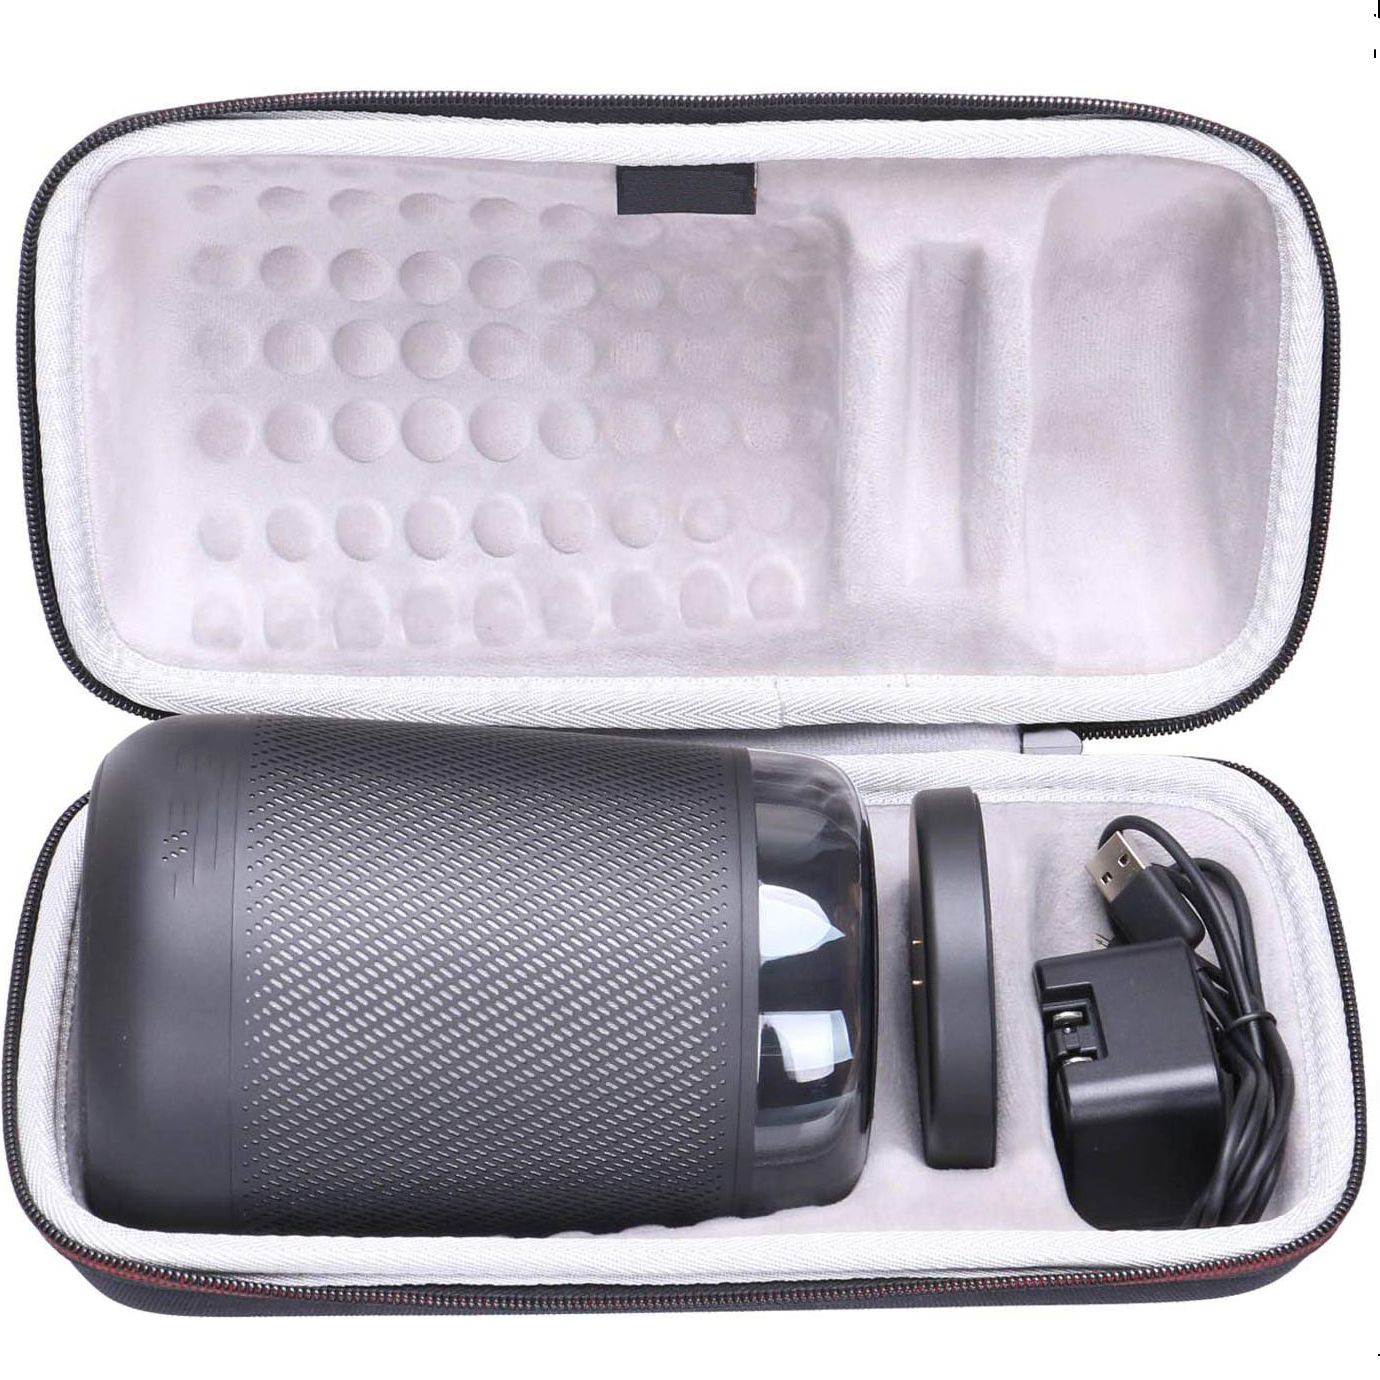 Hard Shell Travel Carrying Eva Speaker Storage Case Bag